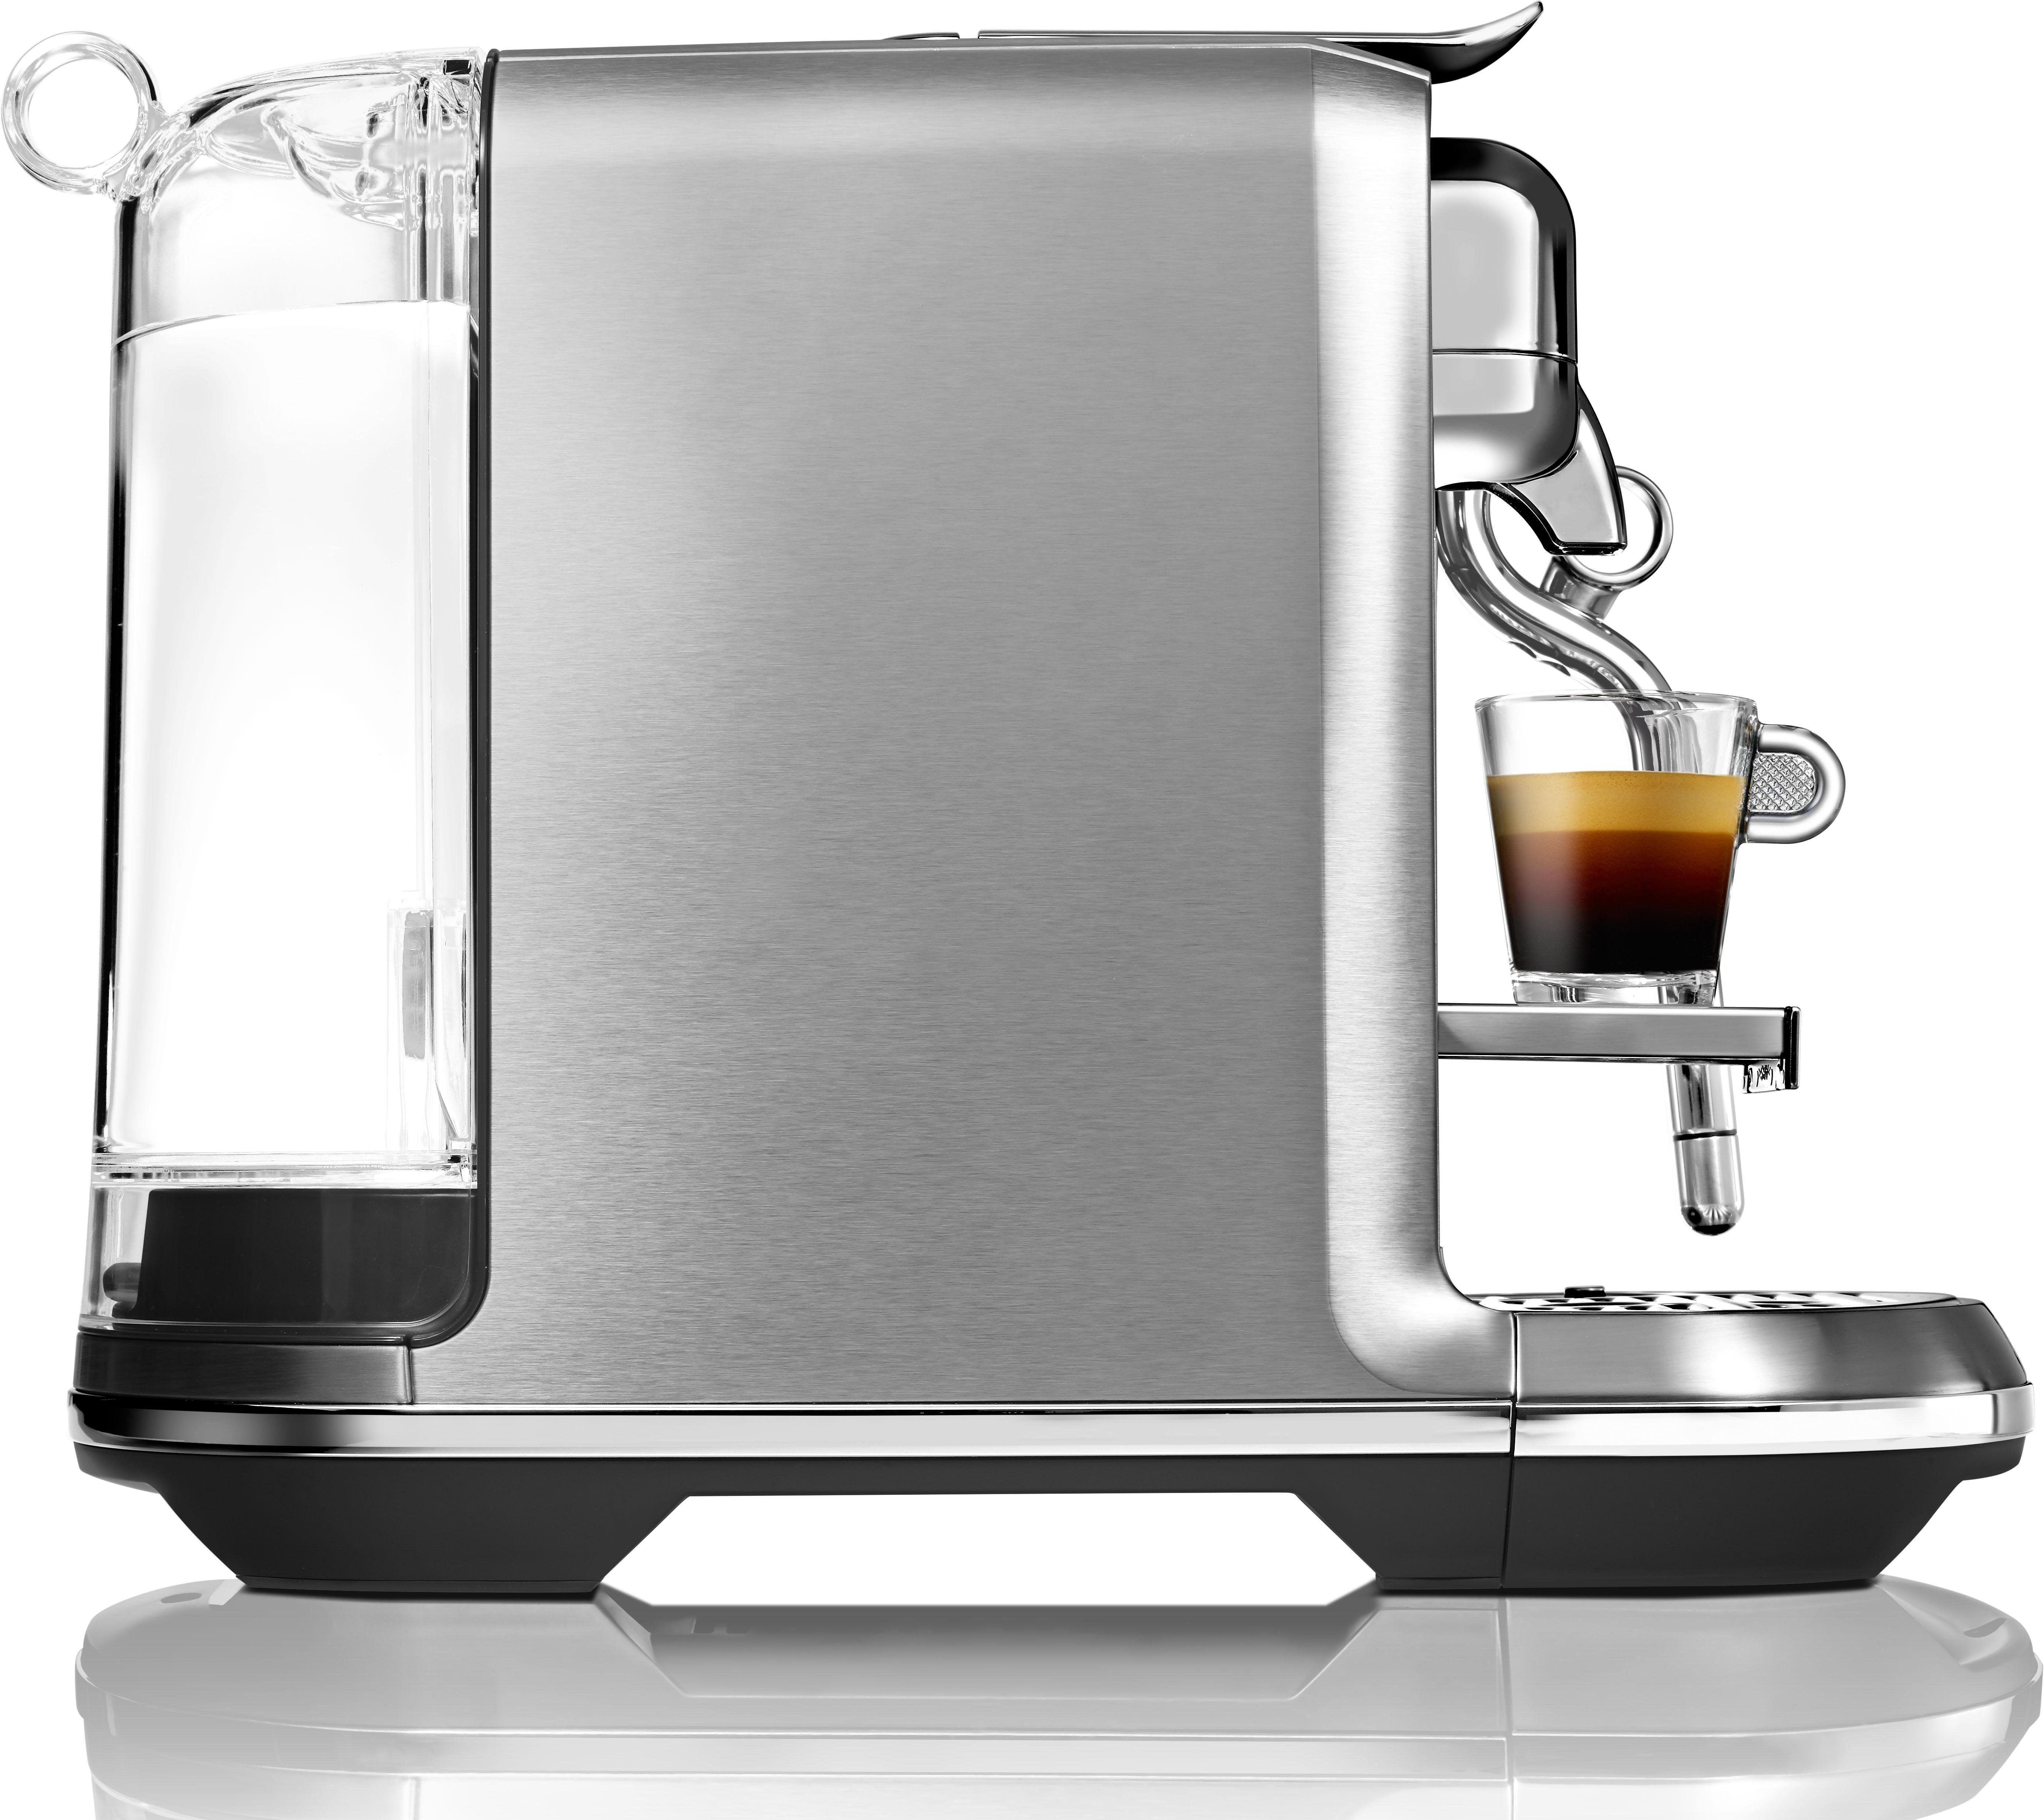 14 Edelstahl-Milchkanne, Kapselmaschine SNE800 Creatista inkl. Nespresso mit Plus Willkommenspaket Kapseln mit